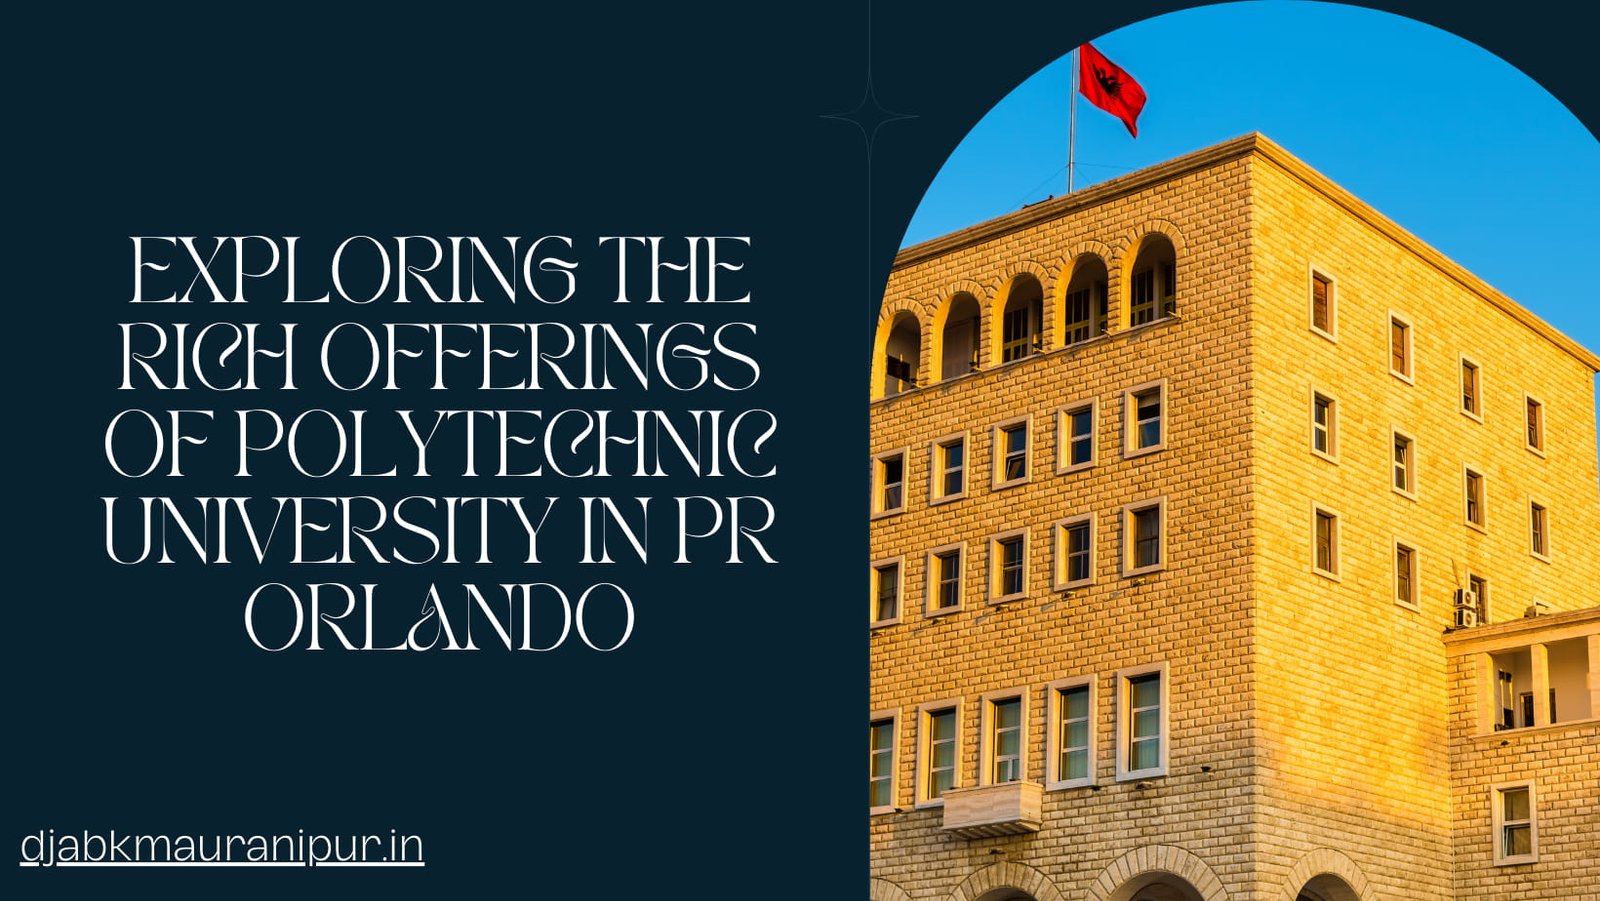 polytechnic university of pr orlando